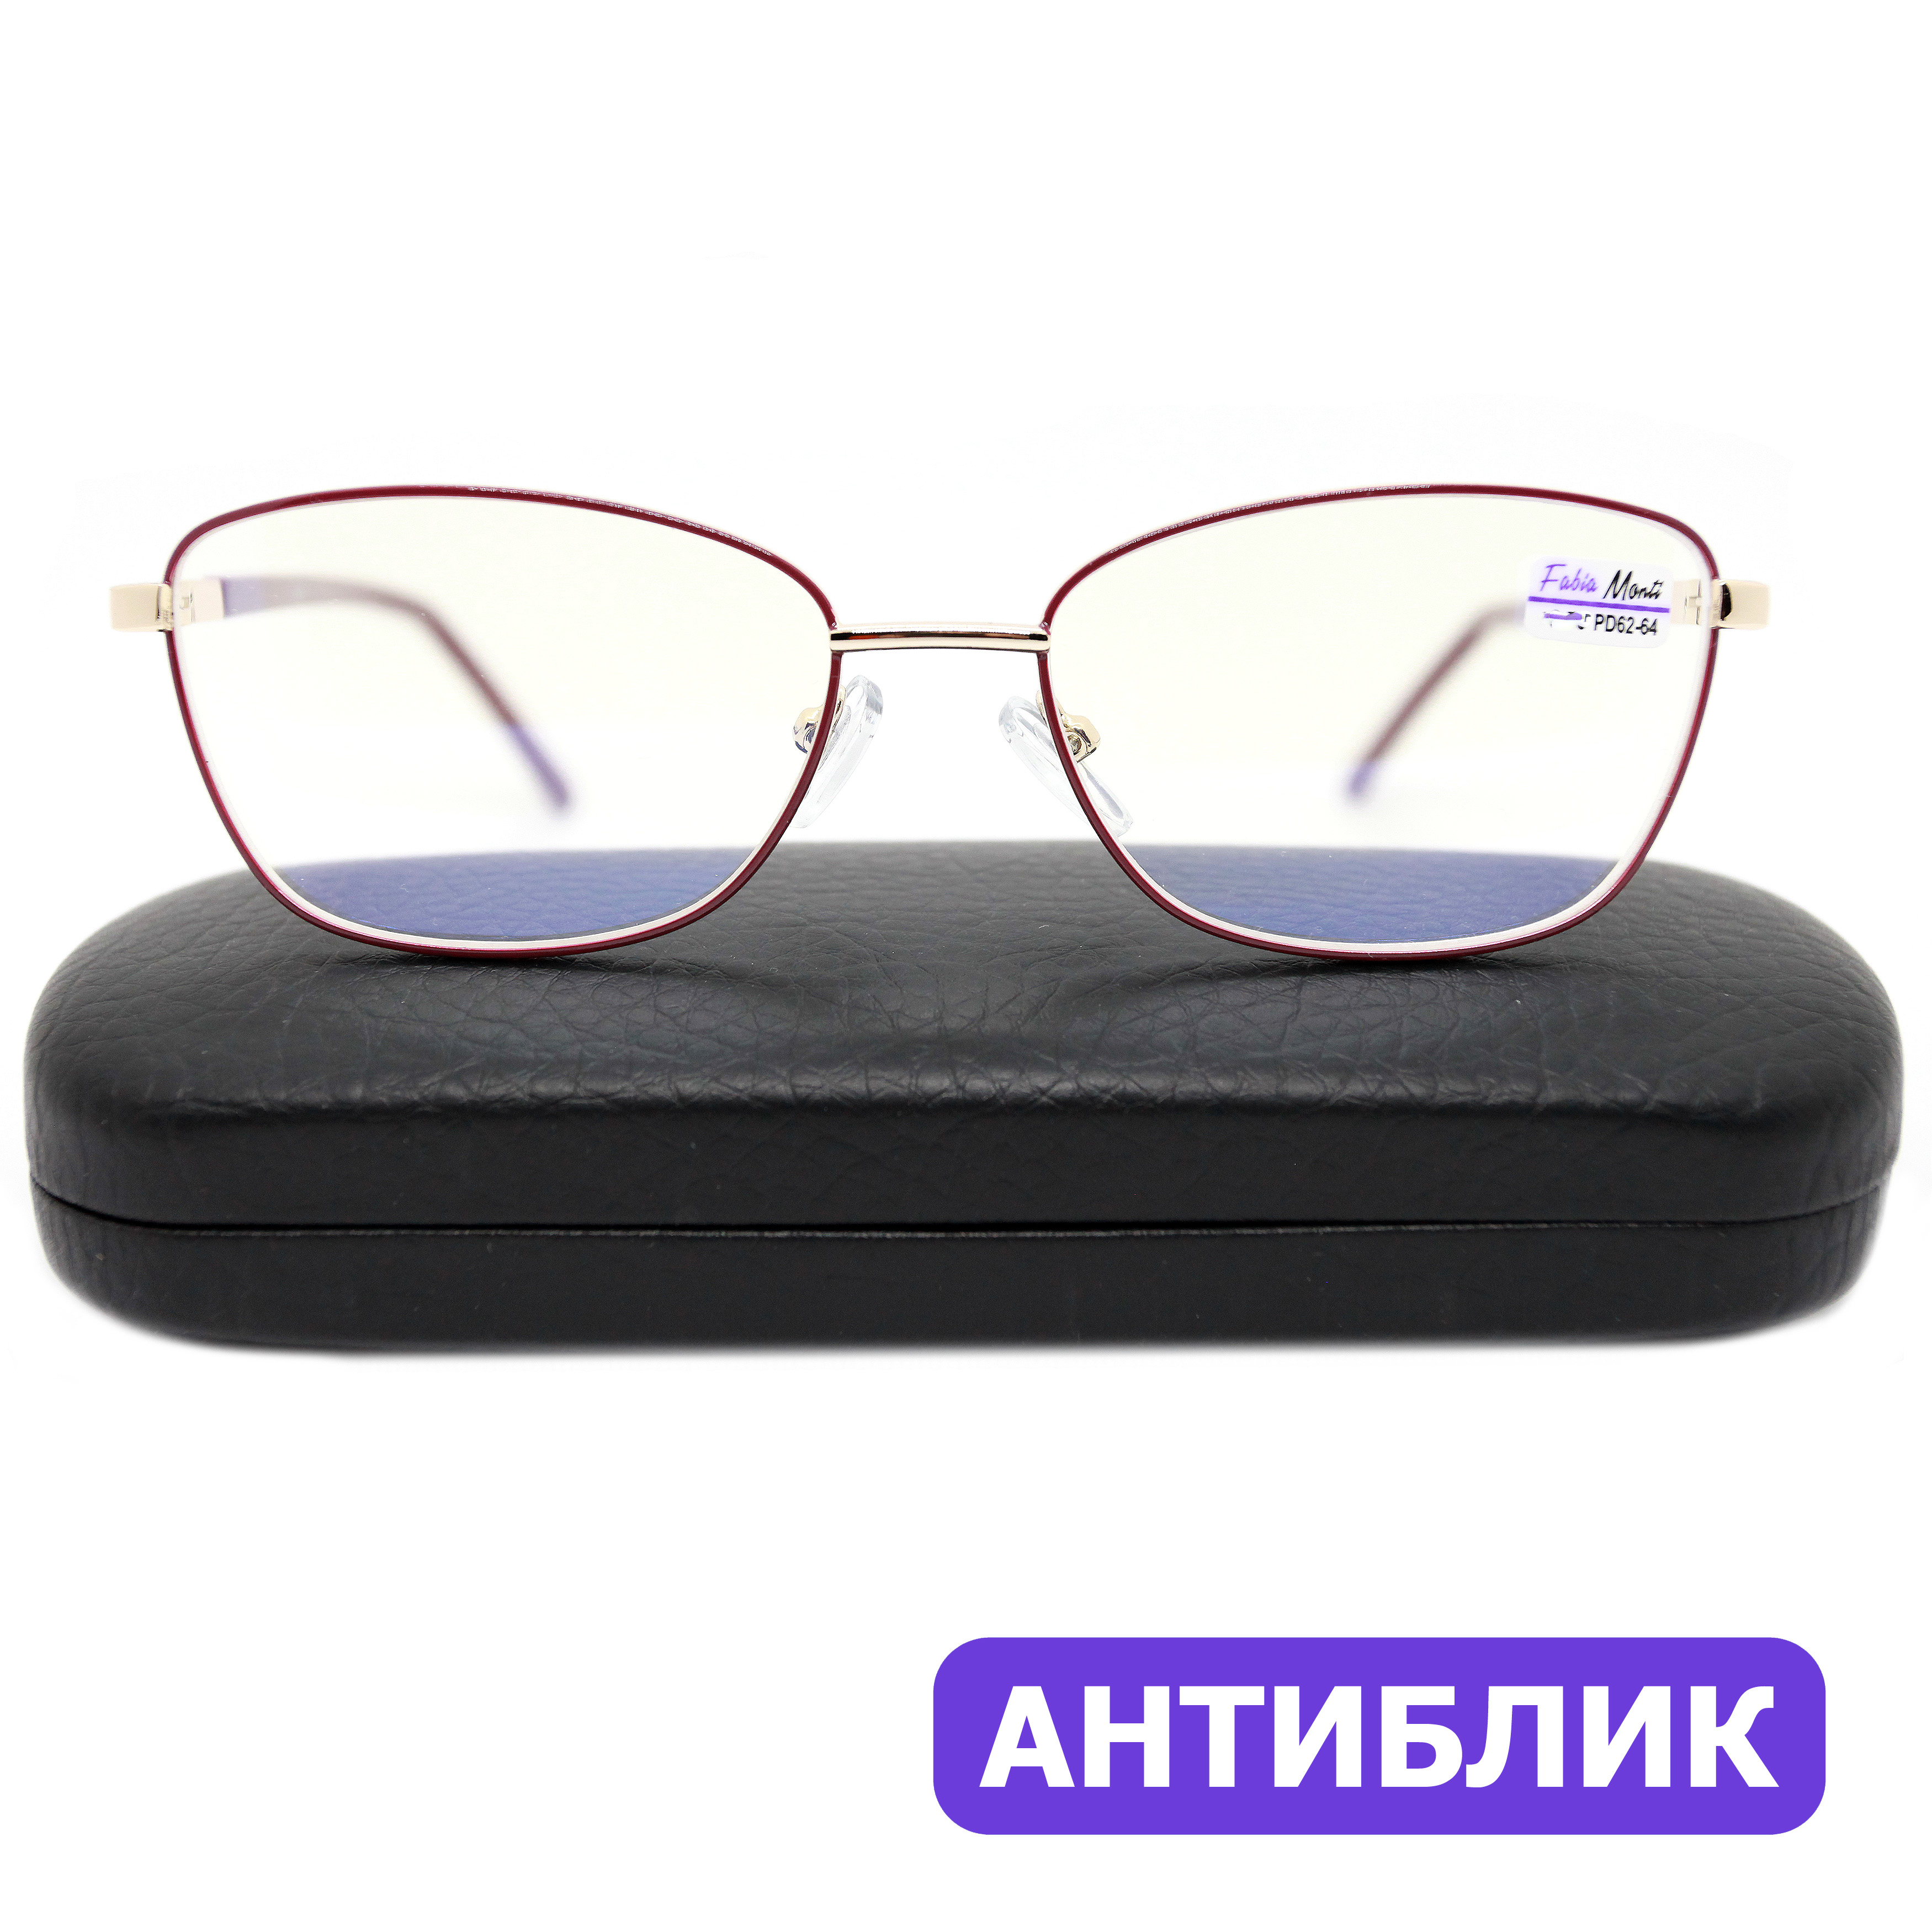 Готовые очки Fabia Monti 8935 +1.75, c футляром, антиблик, цвет бордовый, РЦ 62-64